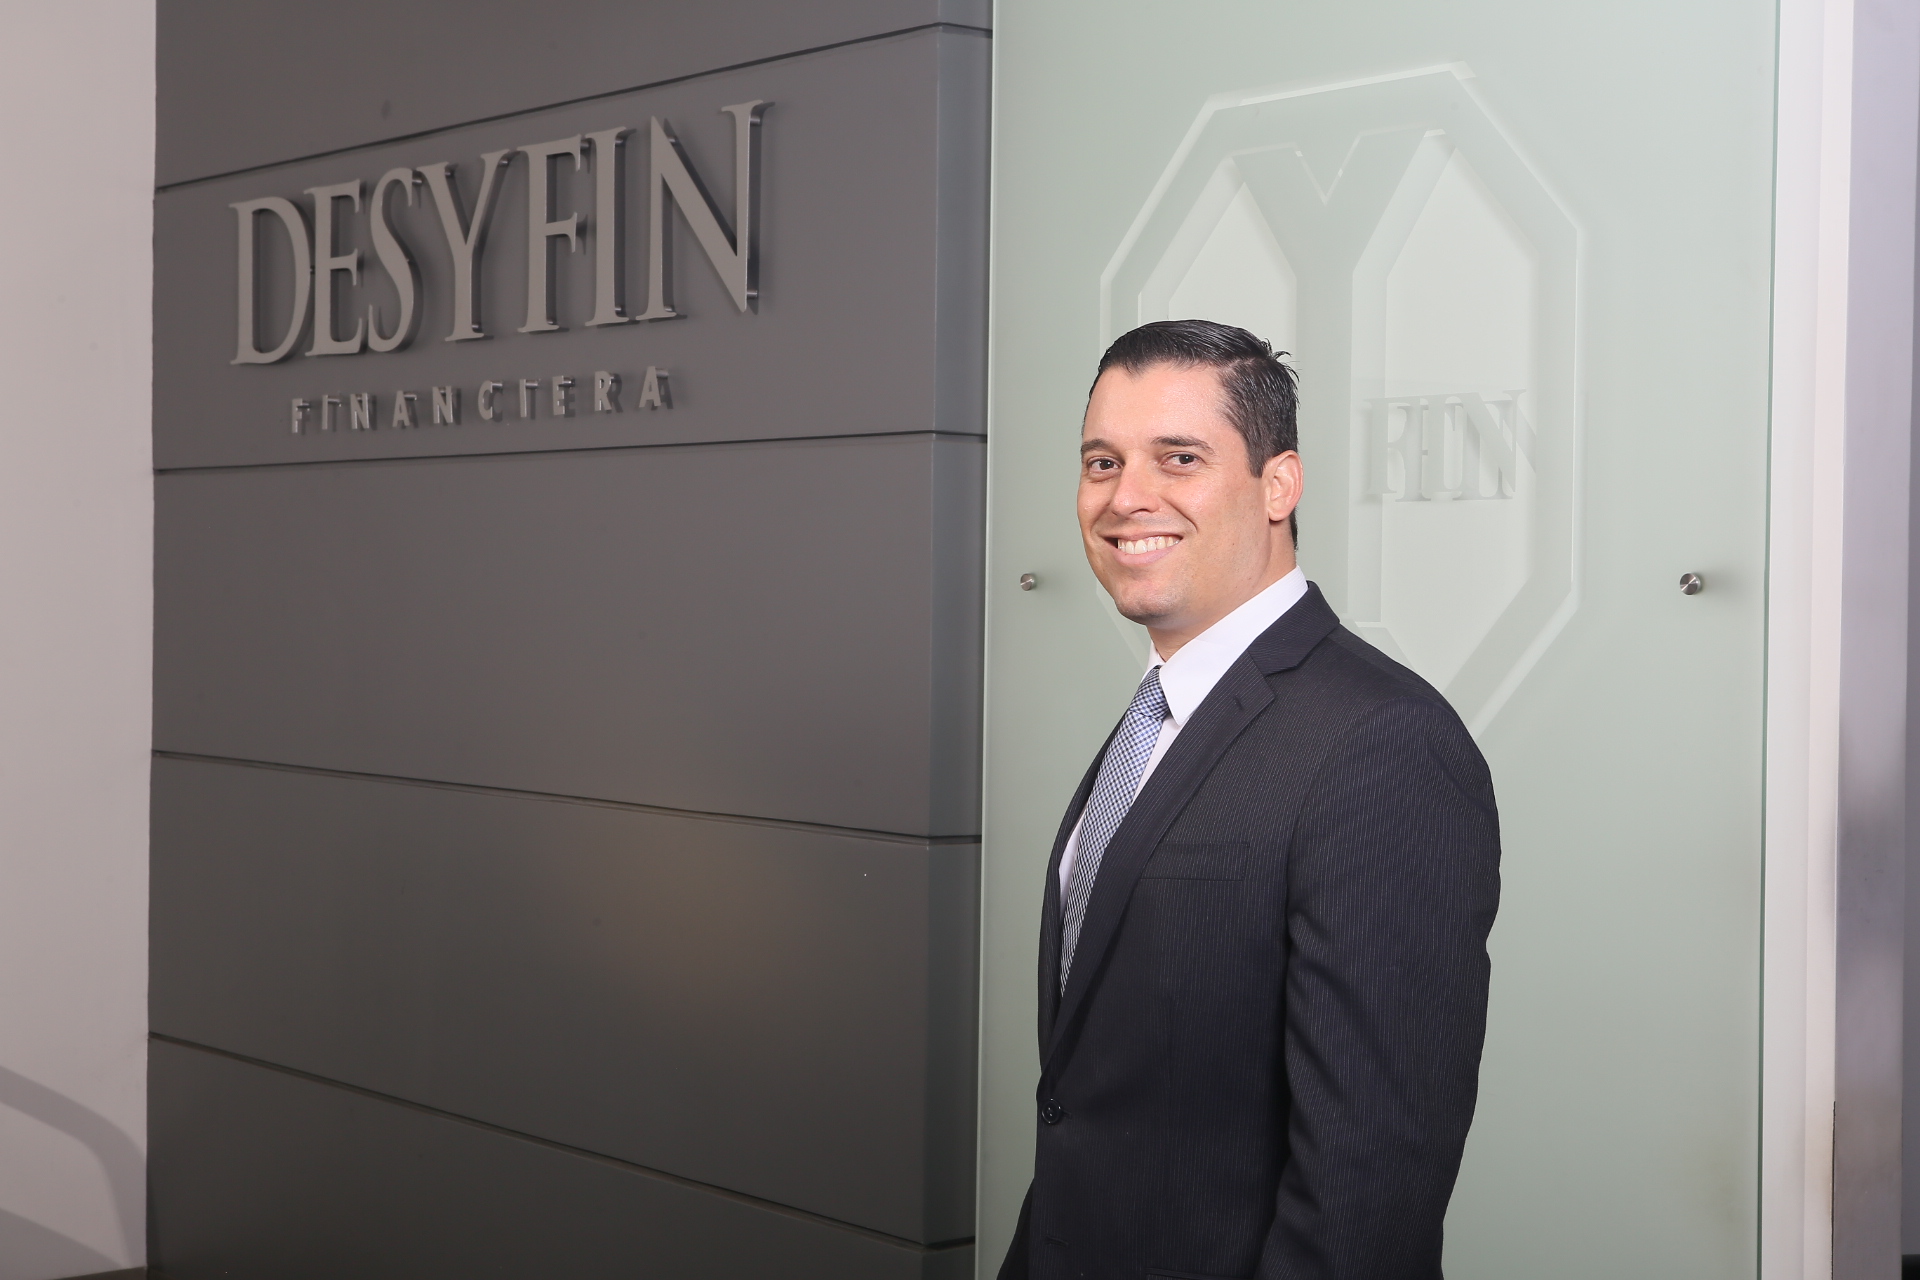 Desyfin dispone de US$19.5 millones para financiar pymes